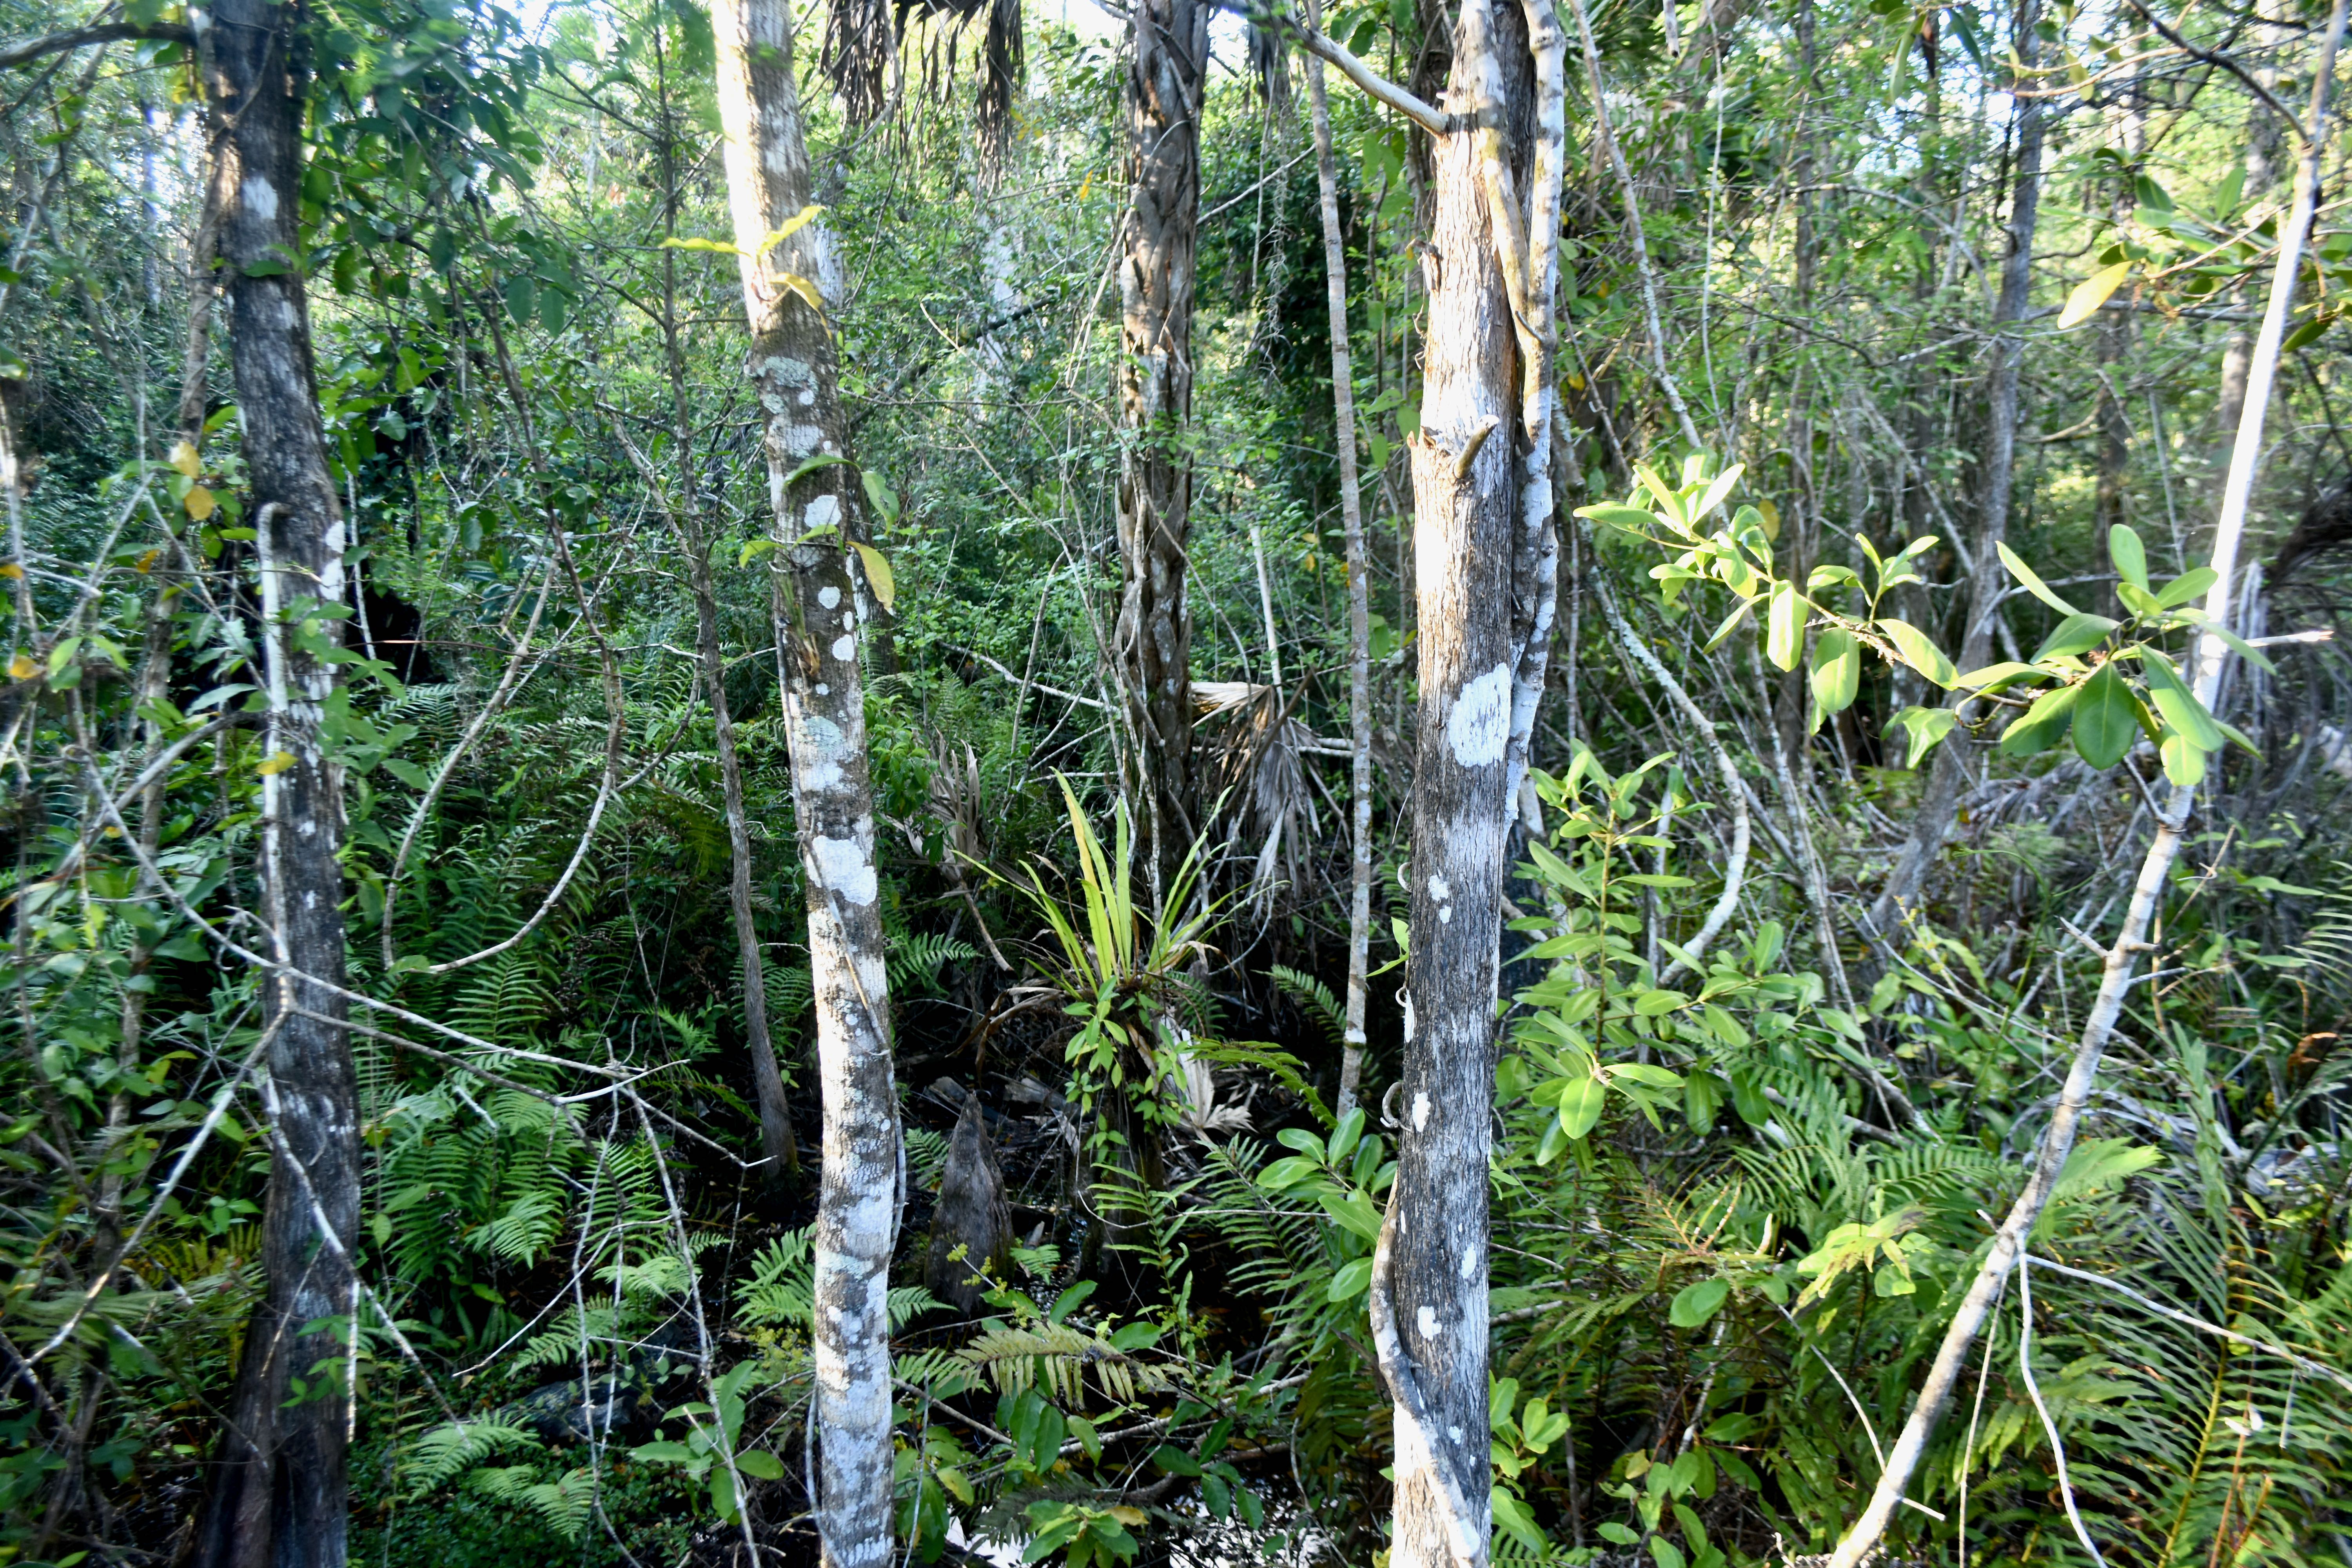 dense undergrowth